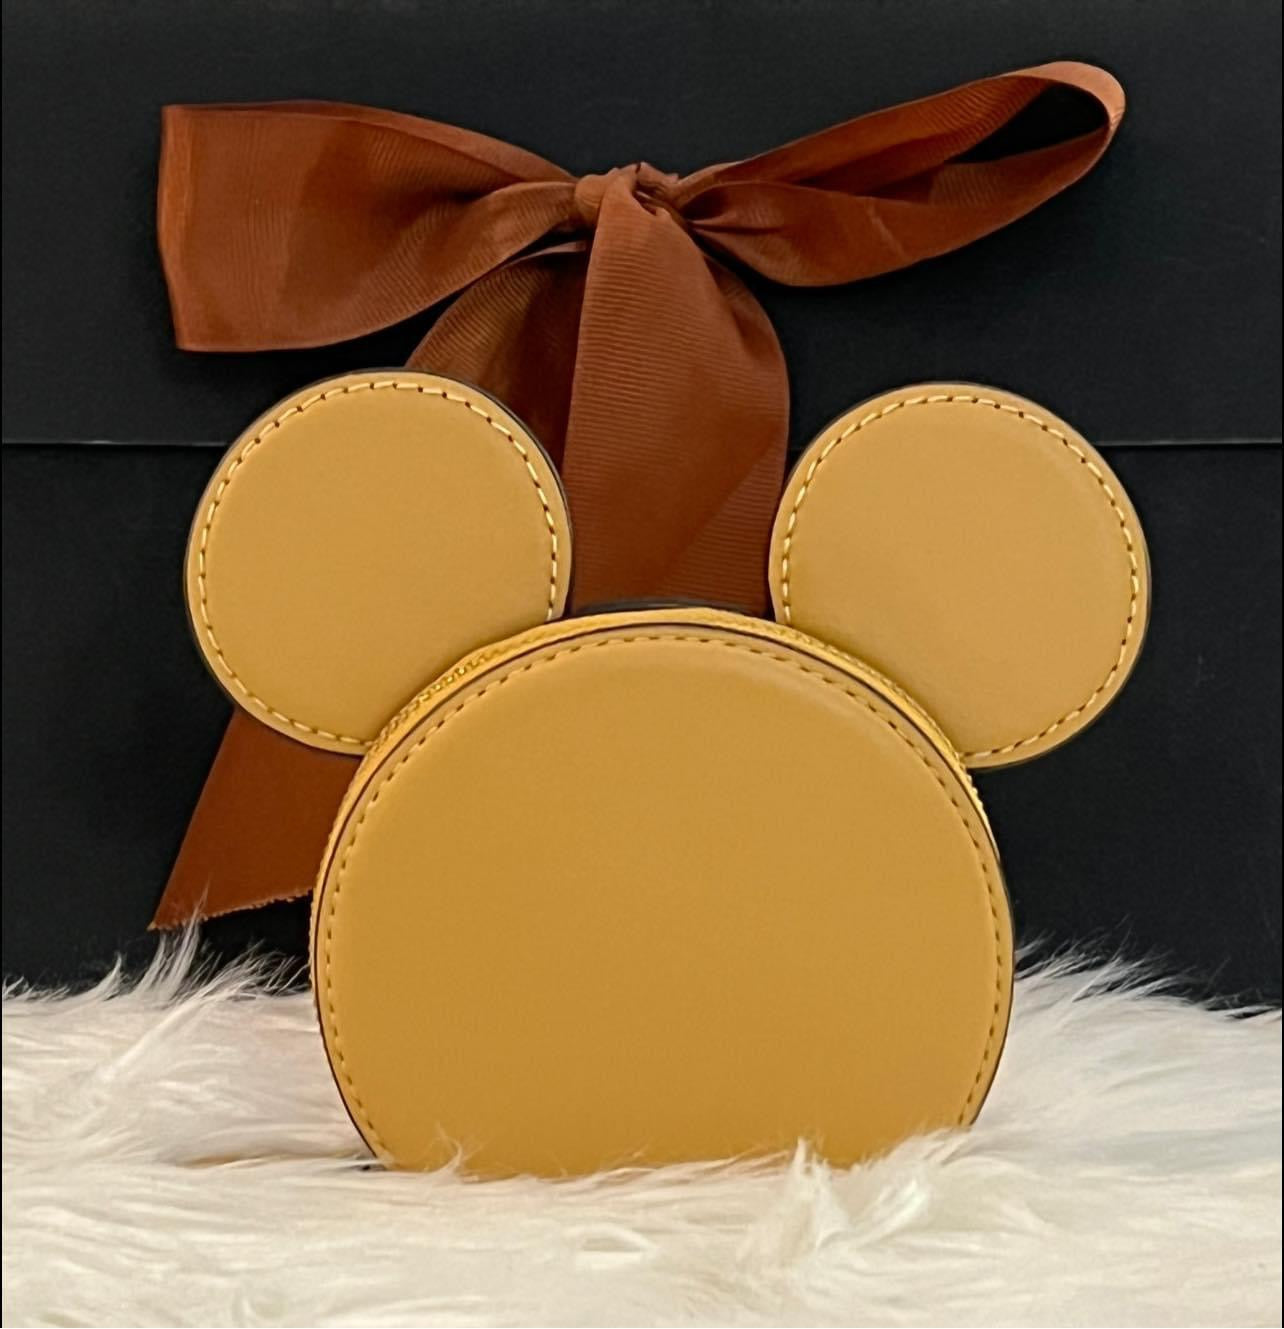 Coach X Disney Mickey Mouse Coin Case